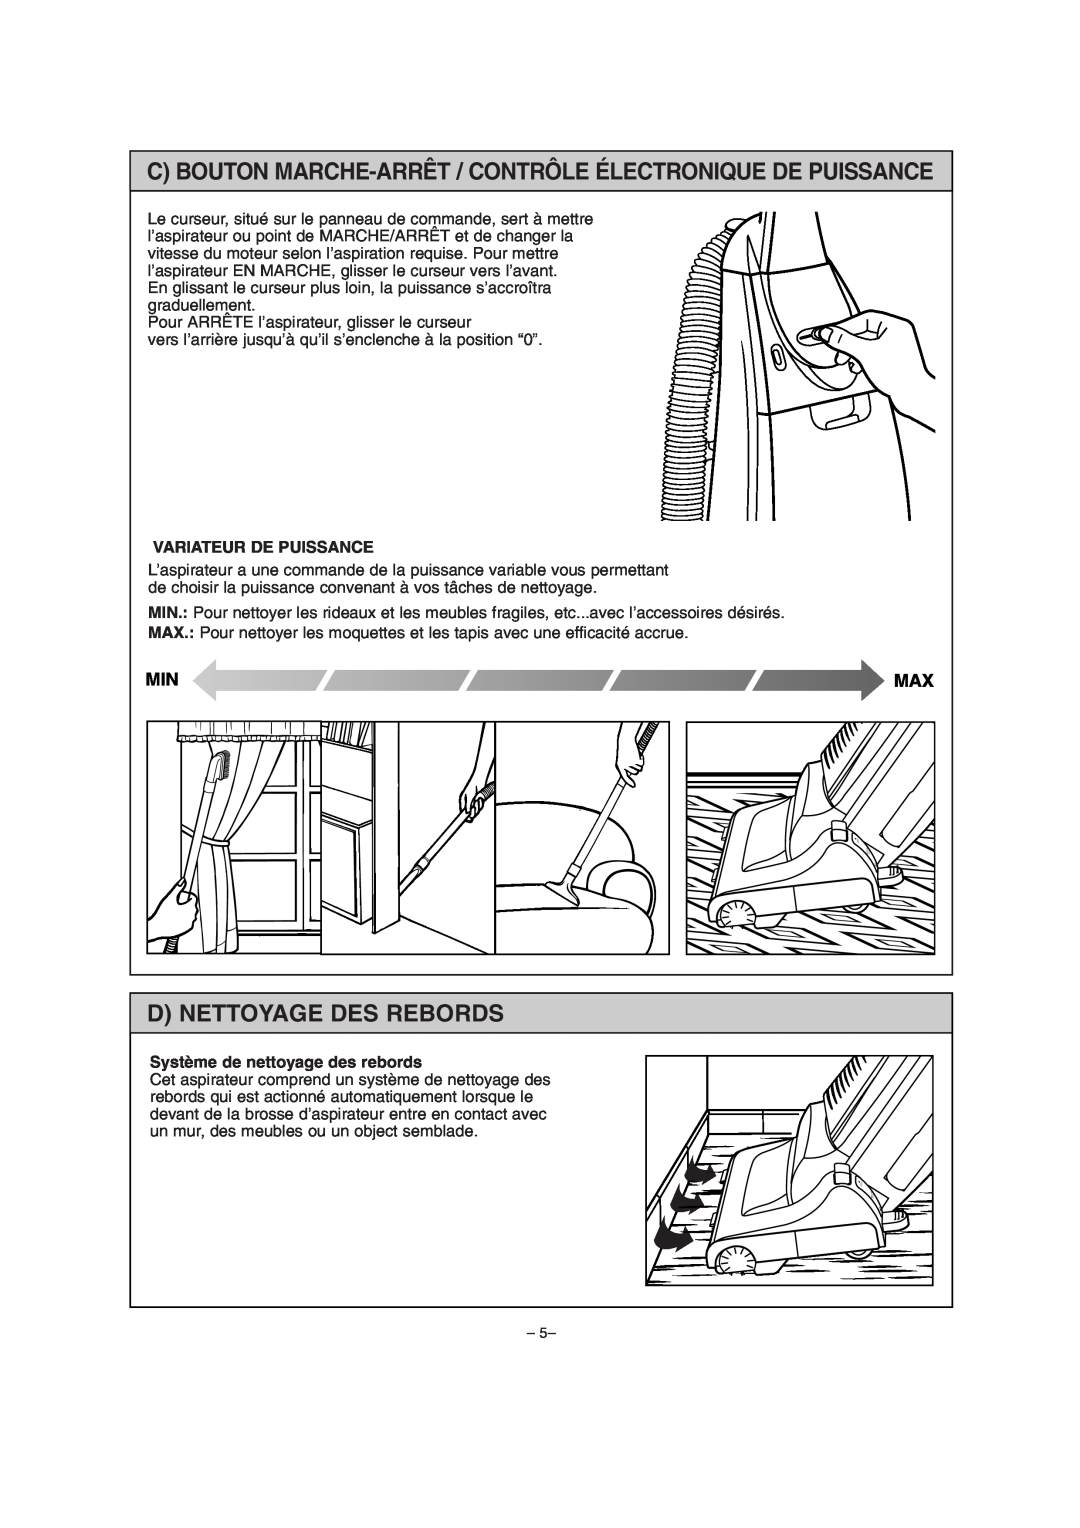 Miele S179i important safety instructions D Nettoyage Des Rebords, Variateur De Puissance, Système de nettoyage des rebords 